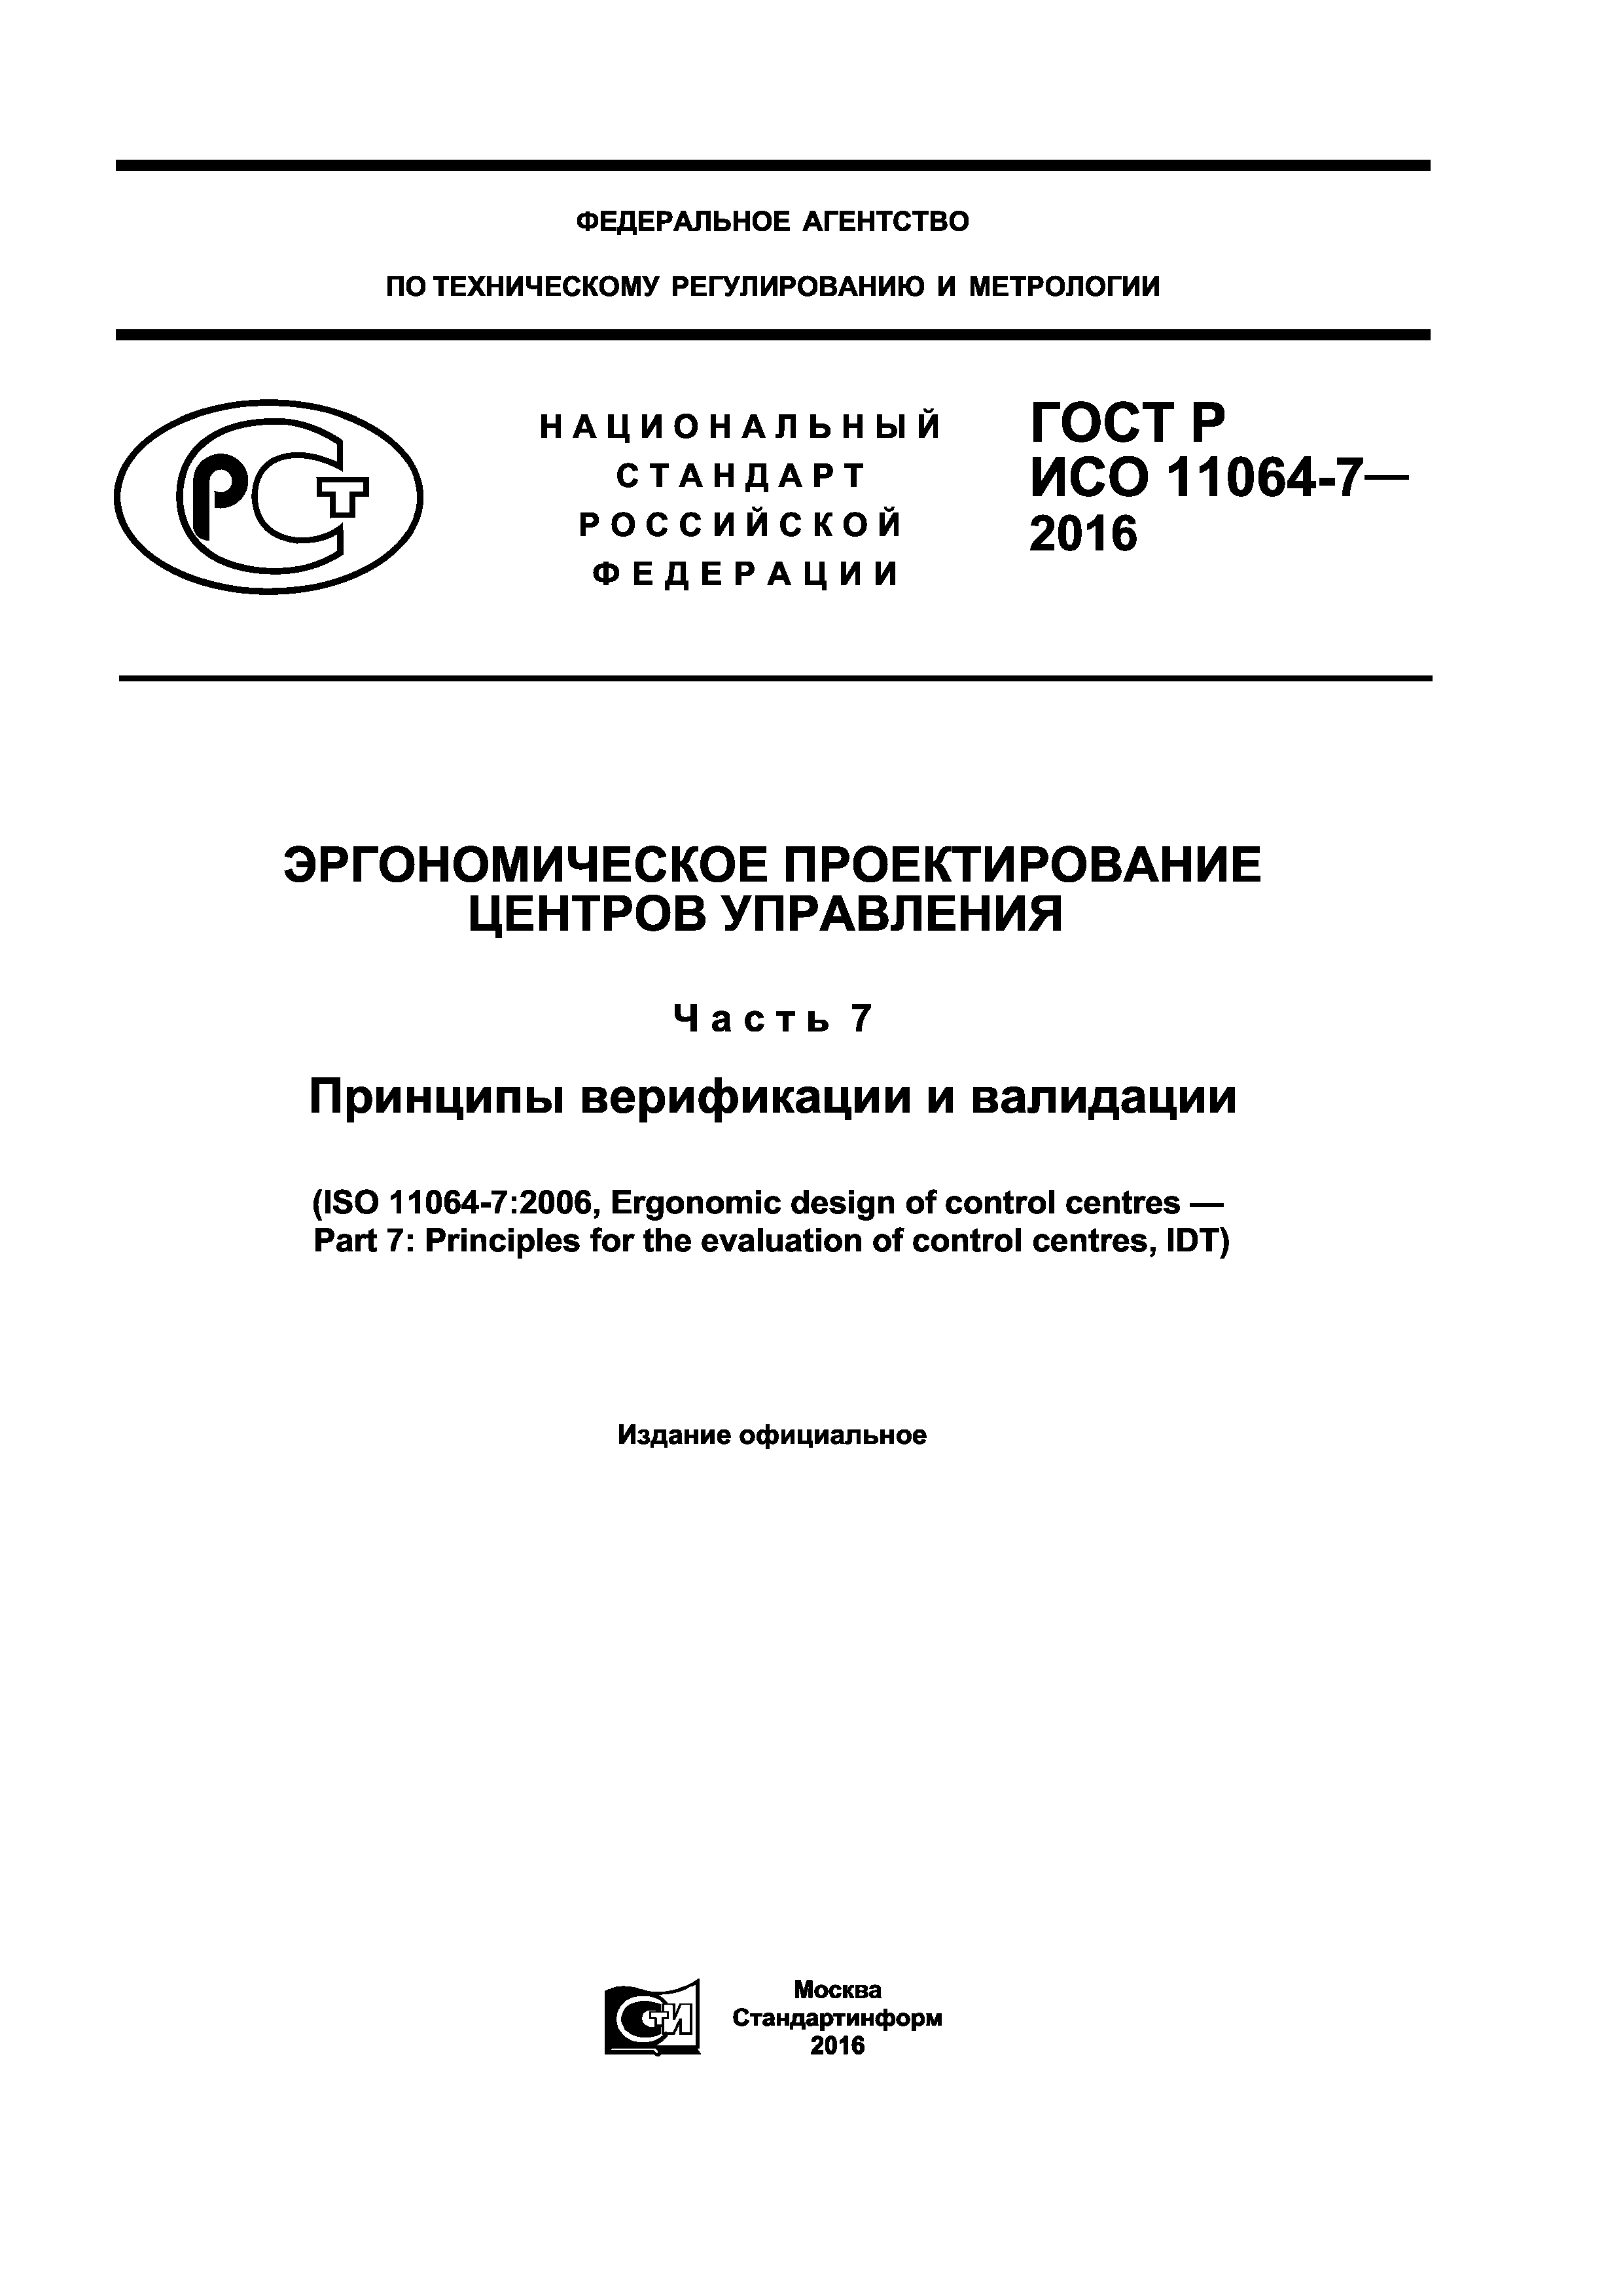 ГОСТ Р ИСО 11064-7-2016